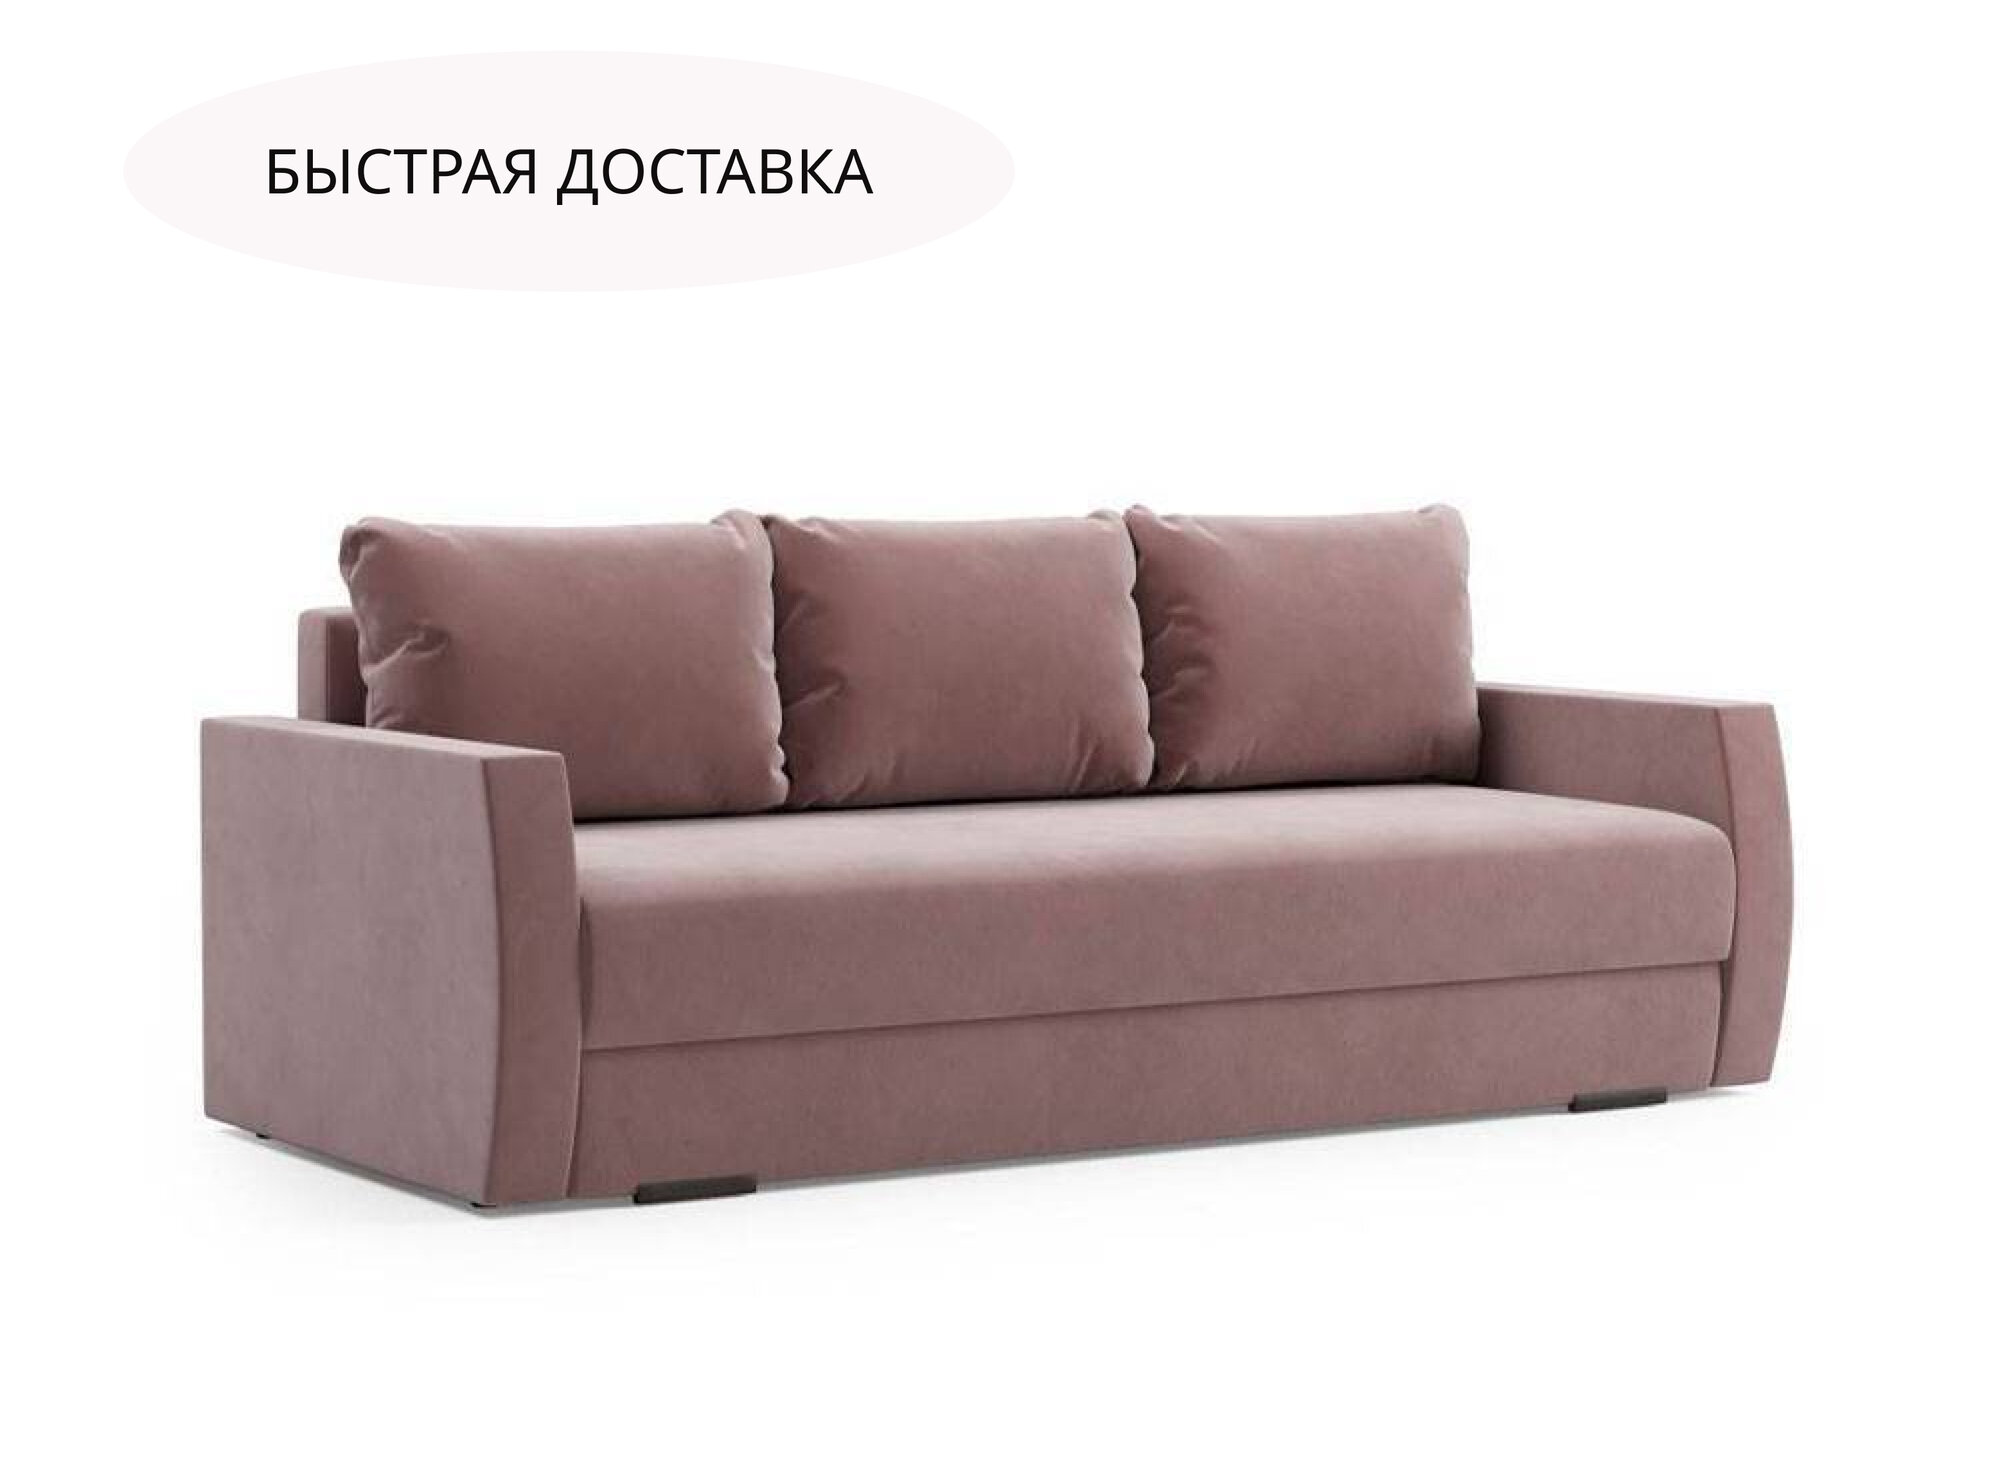 Диван Гольф, диван кровать, диван классик, еврокнижка , диван прямой, диван для сна, диван раскладной.